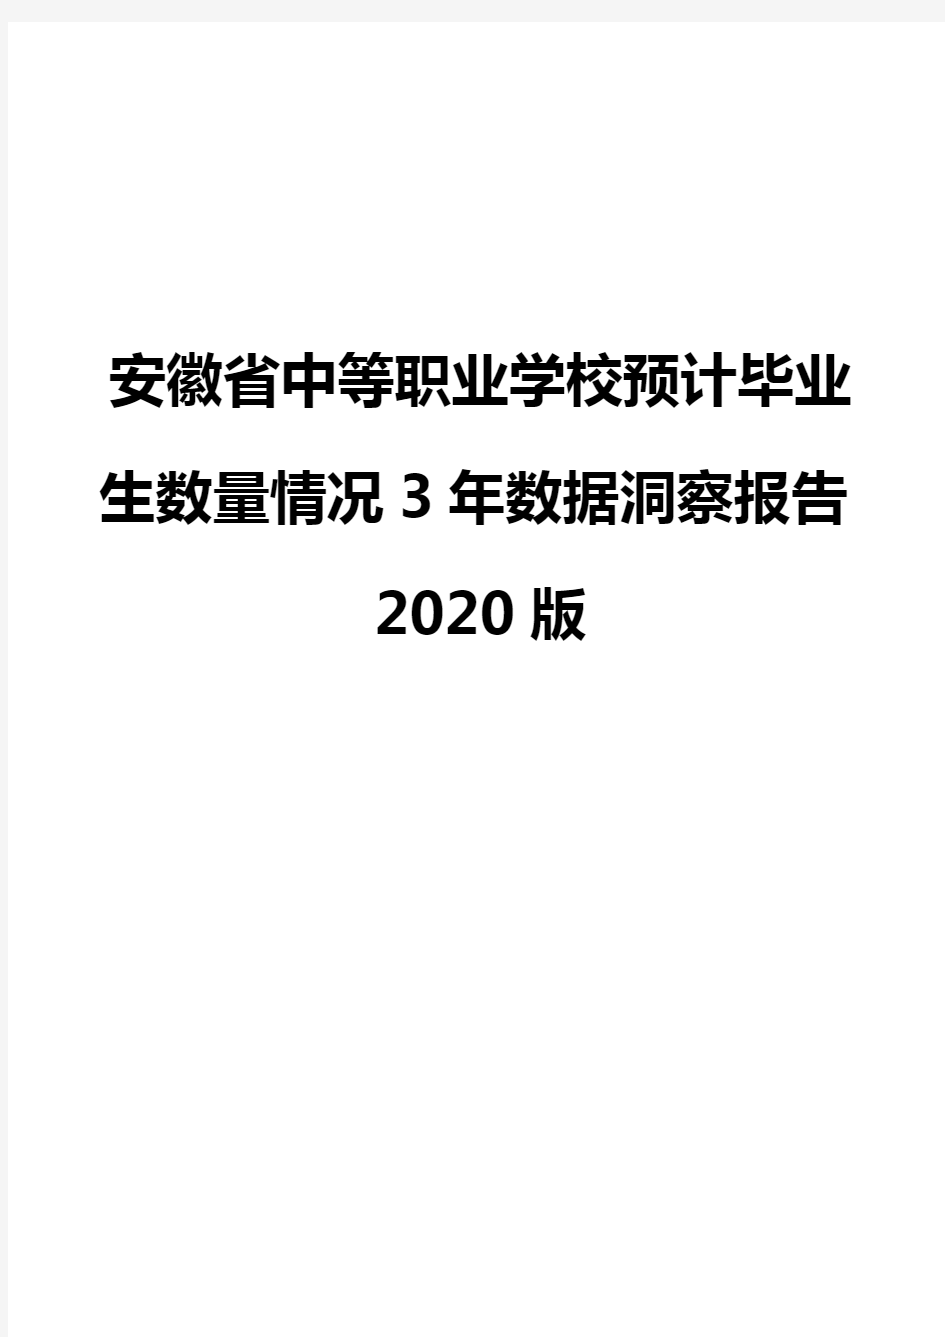 安徽省中等职业学校预计毕业生数量情况3年数据洞察报告2020版